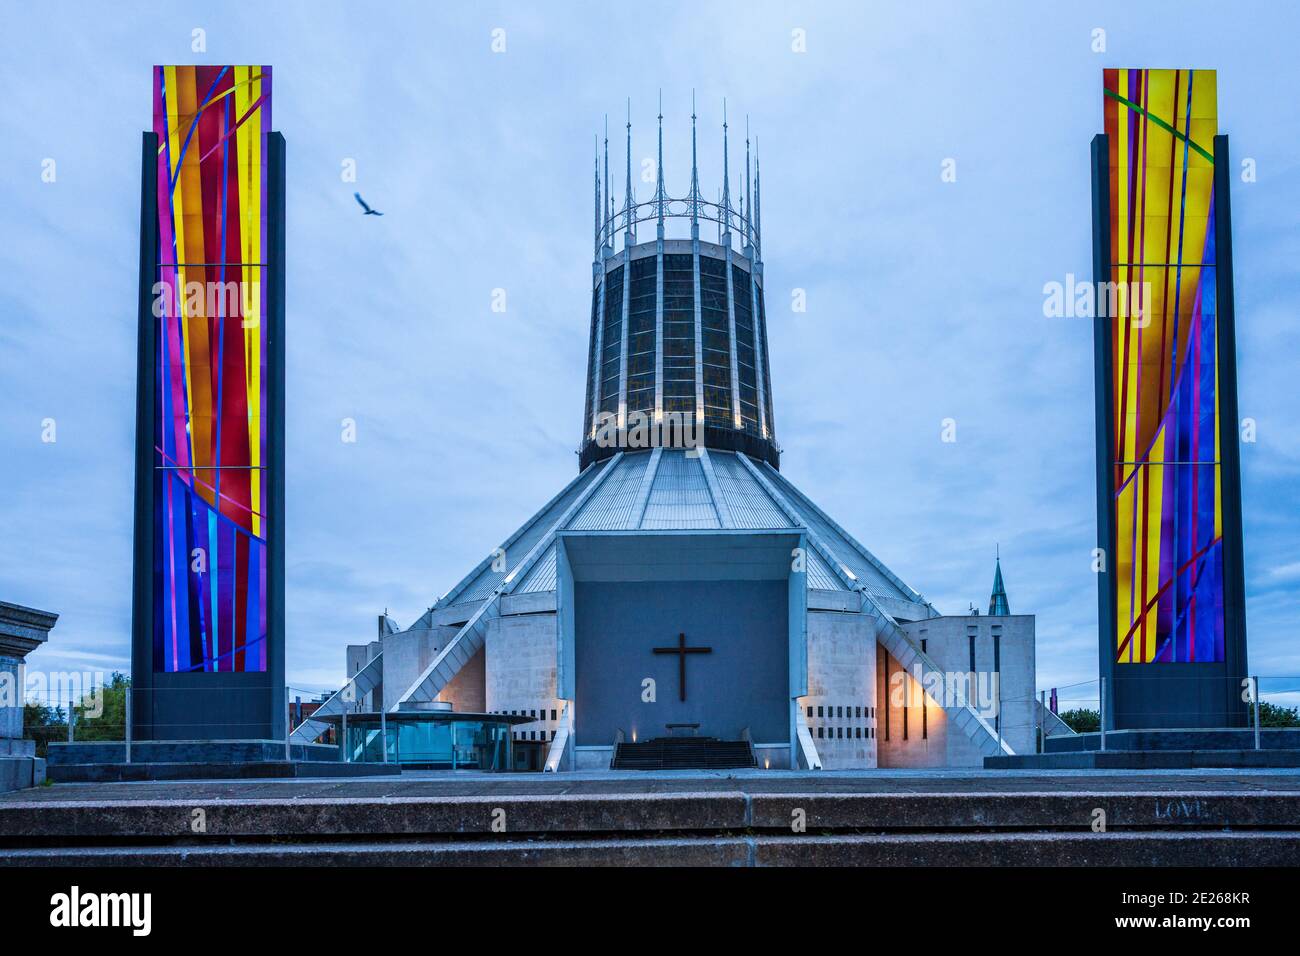 Cathédrale métropolitaine de Liverpool, cathédrale métropolitaine de Christ le Roi Liverpool. Catholique romaine - architecte Frederick Gibberd 1962-1967. Banque D'Images